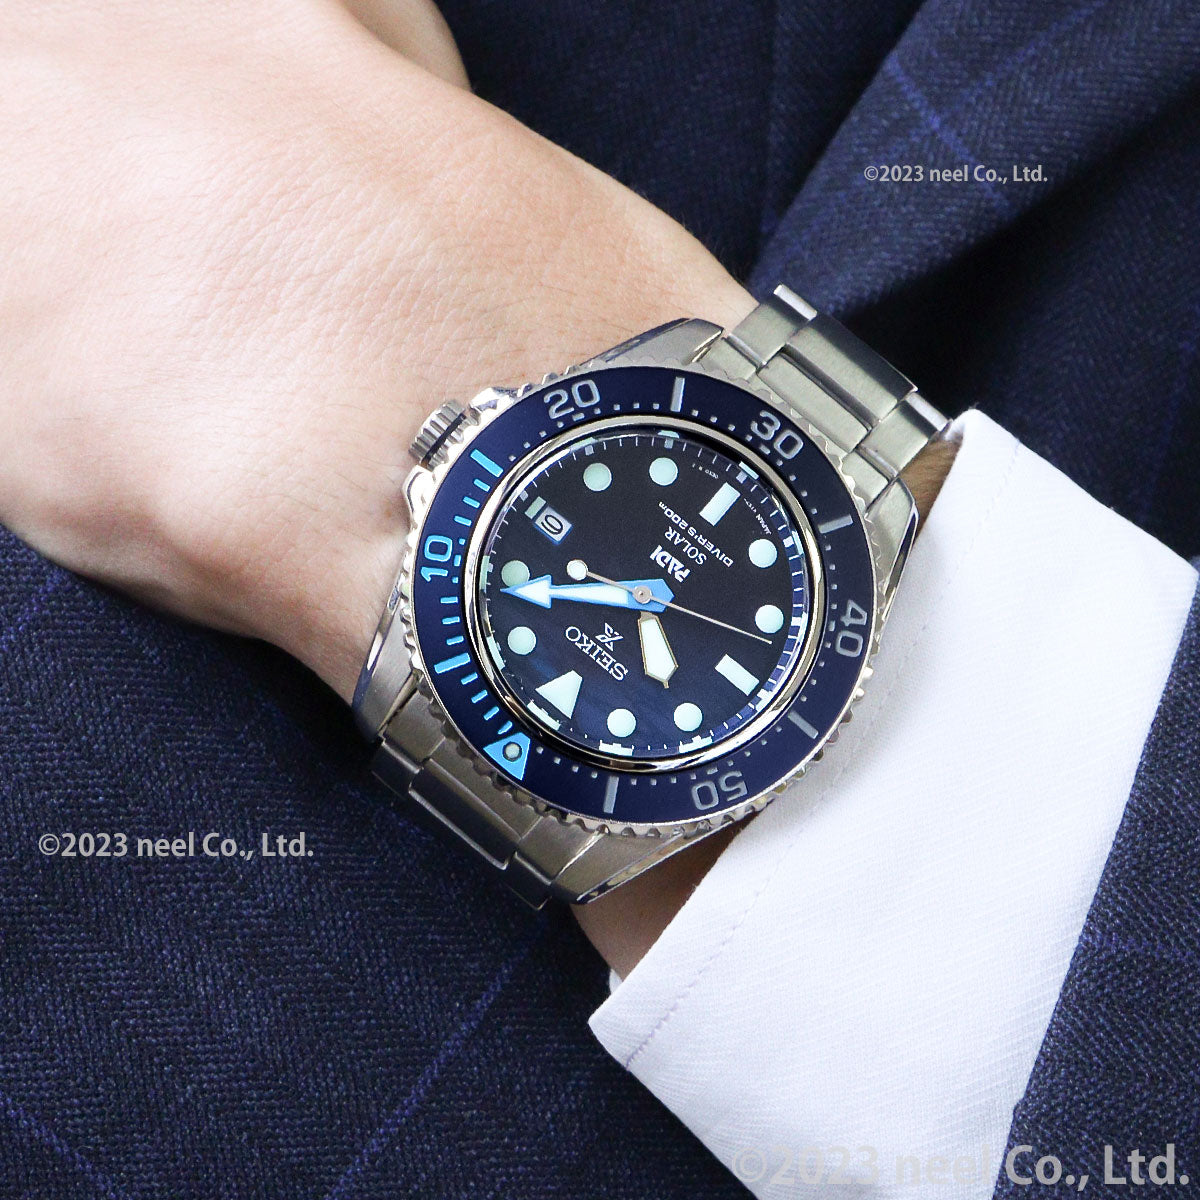 セイコー SEIKO PROSPEX 「海」シリーズ 腕時計 メンズ SBDJ057 プロスペックス ダイバースキューバ ソーラー ブルーグラデーションxシルバー アナログ表示